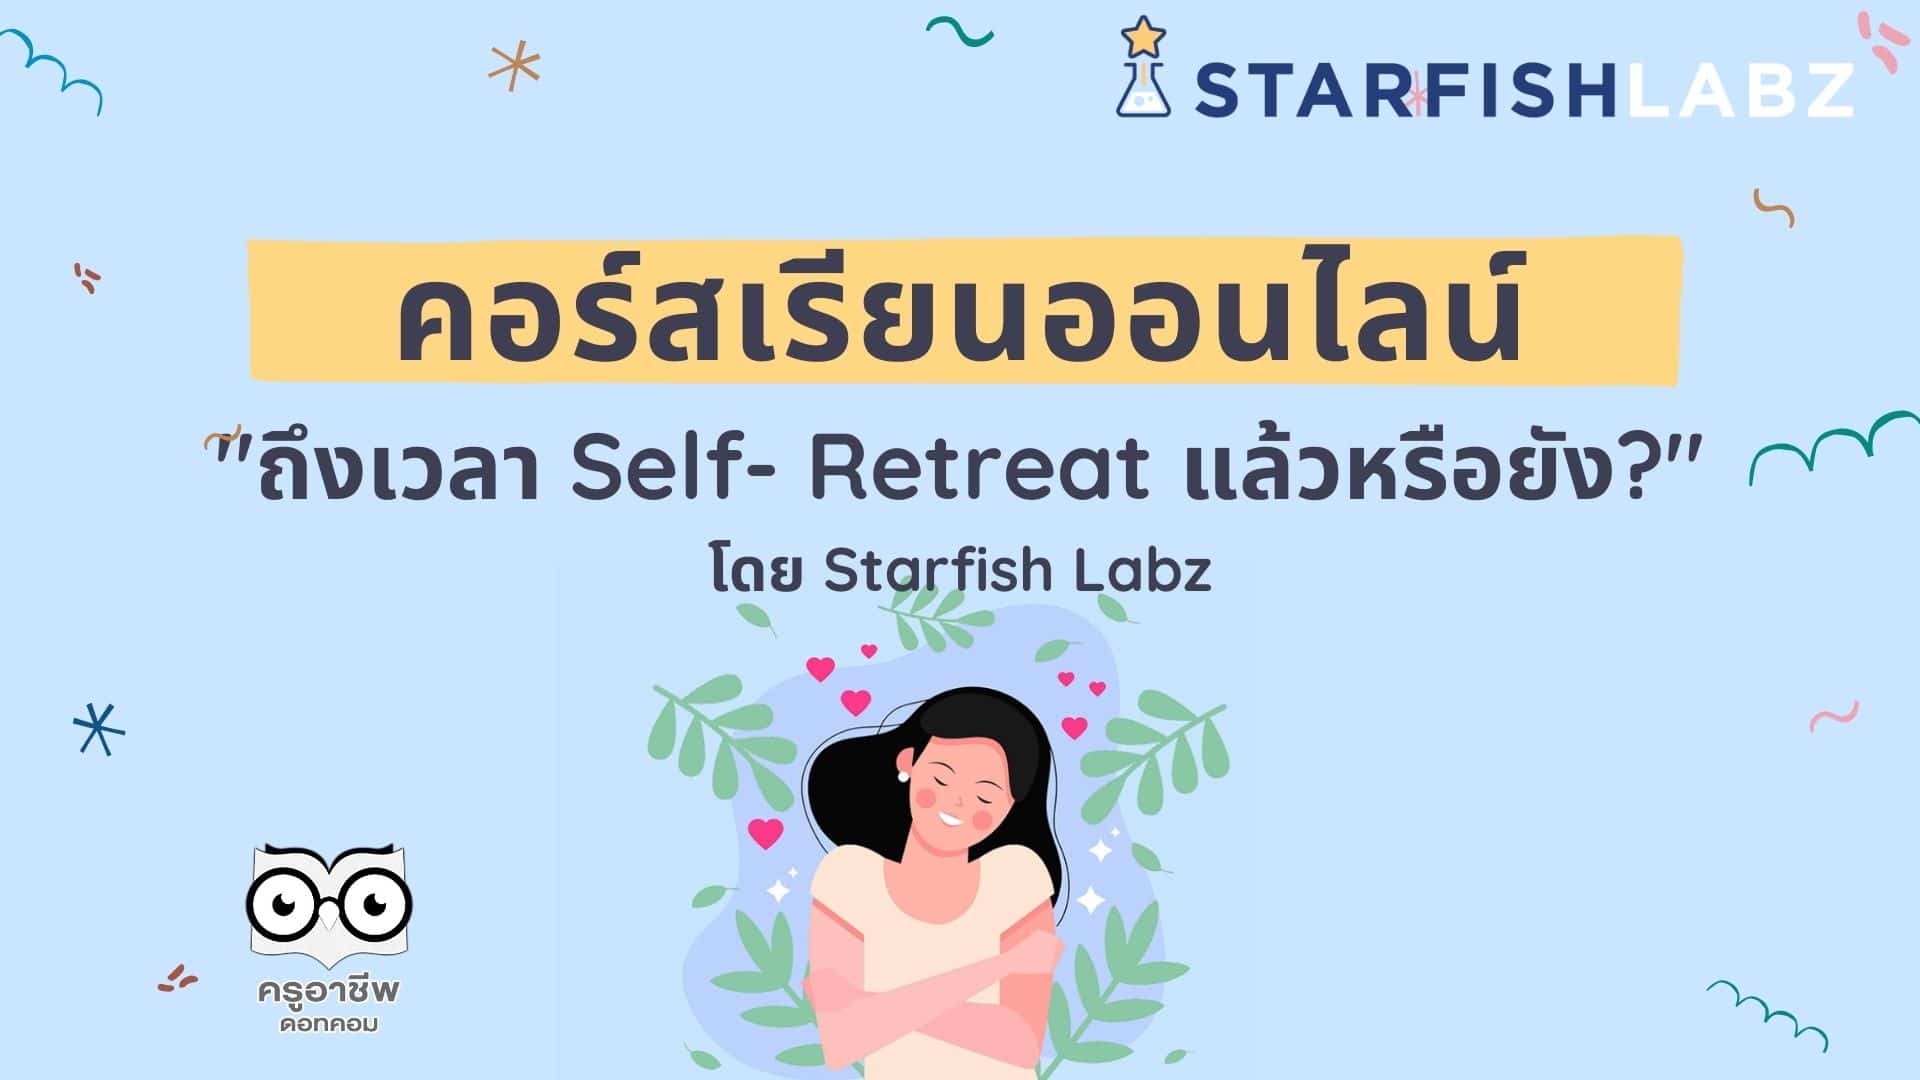 ชวนมาเรียนรู้ เรื่อง Self- Retreat เพิ่มความสุขให้กับตนเอง ด้วยหลักสูตรออนไลน์ "ถึงเวลา Self- Retreat แล้วหรือยัง?" โดย Starfish Labz